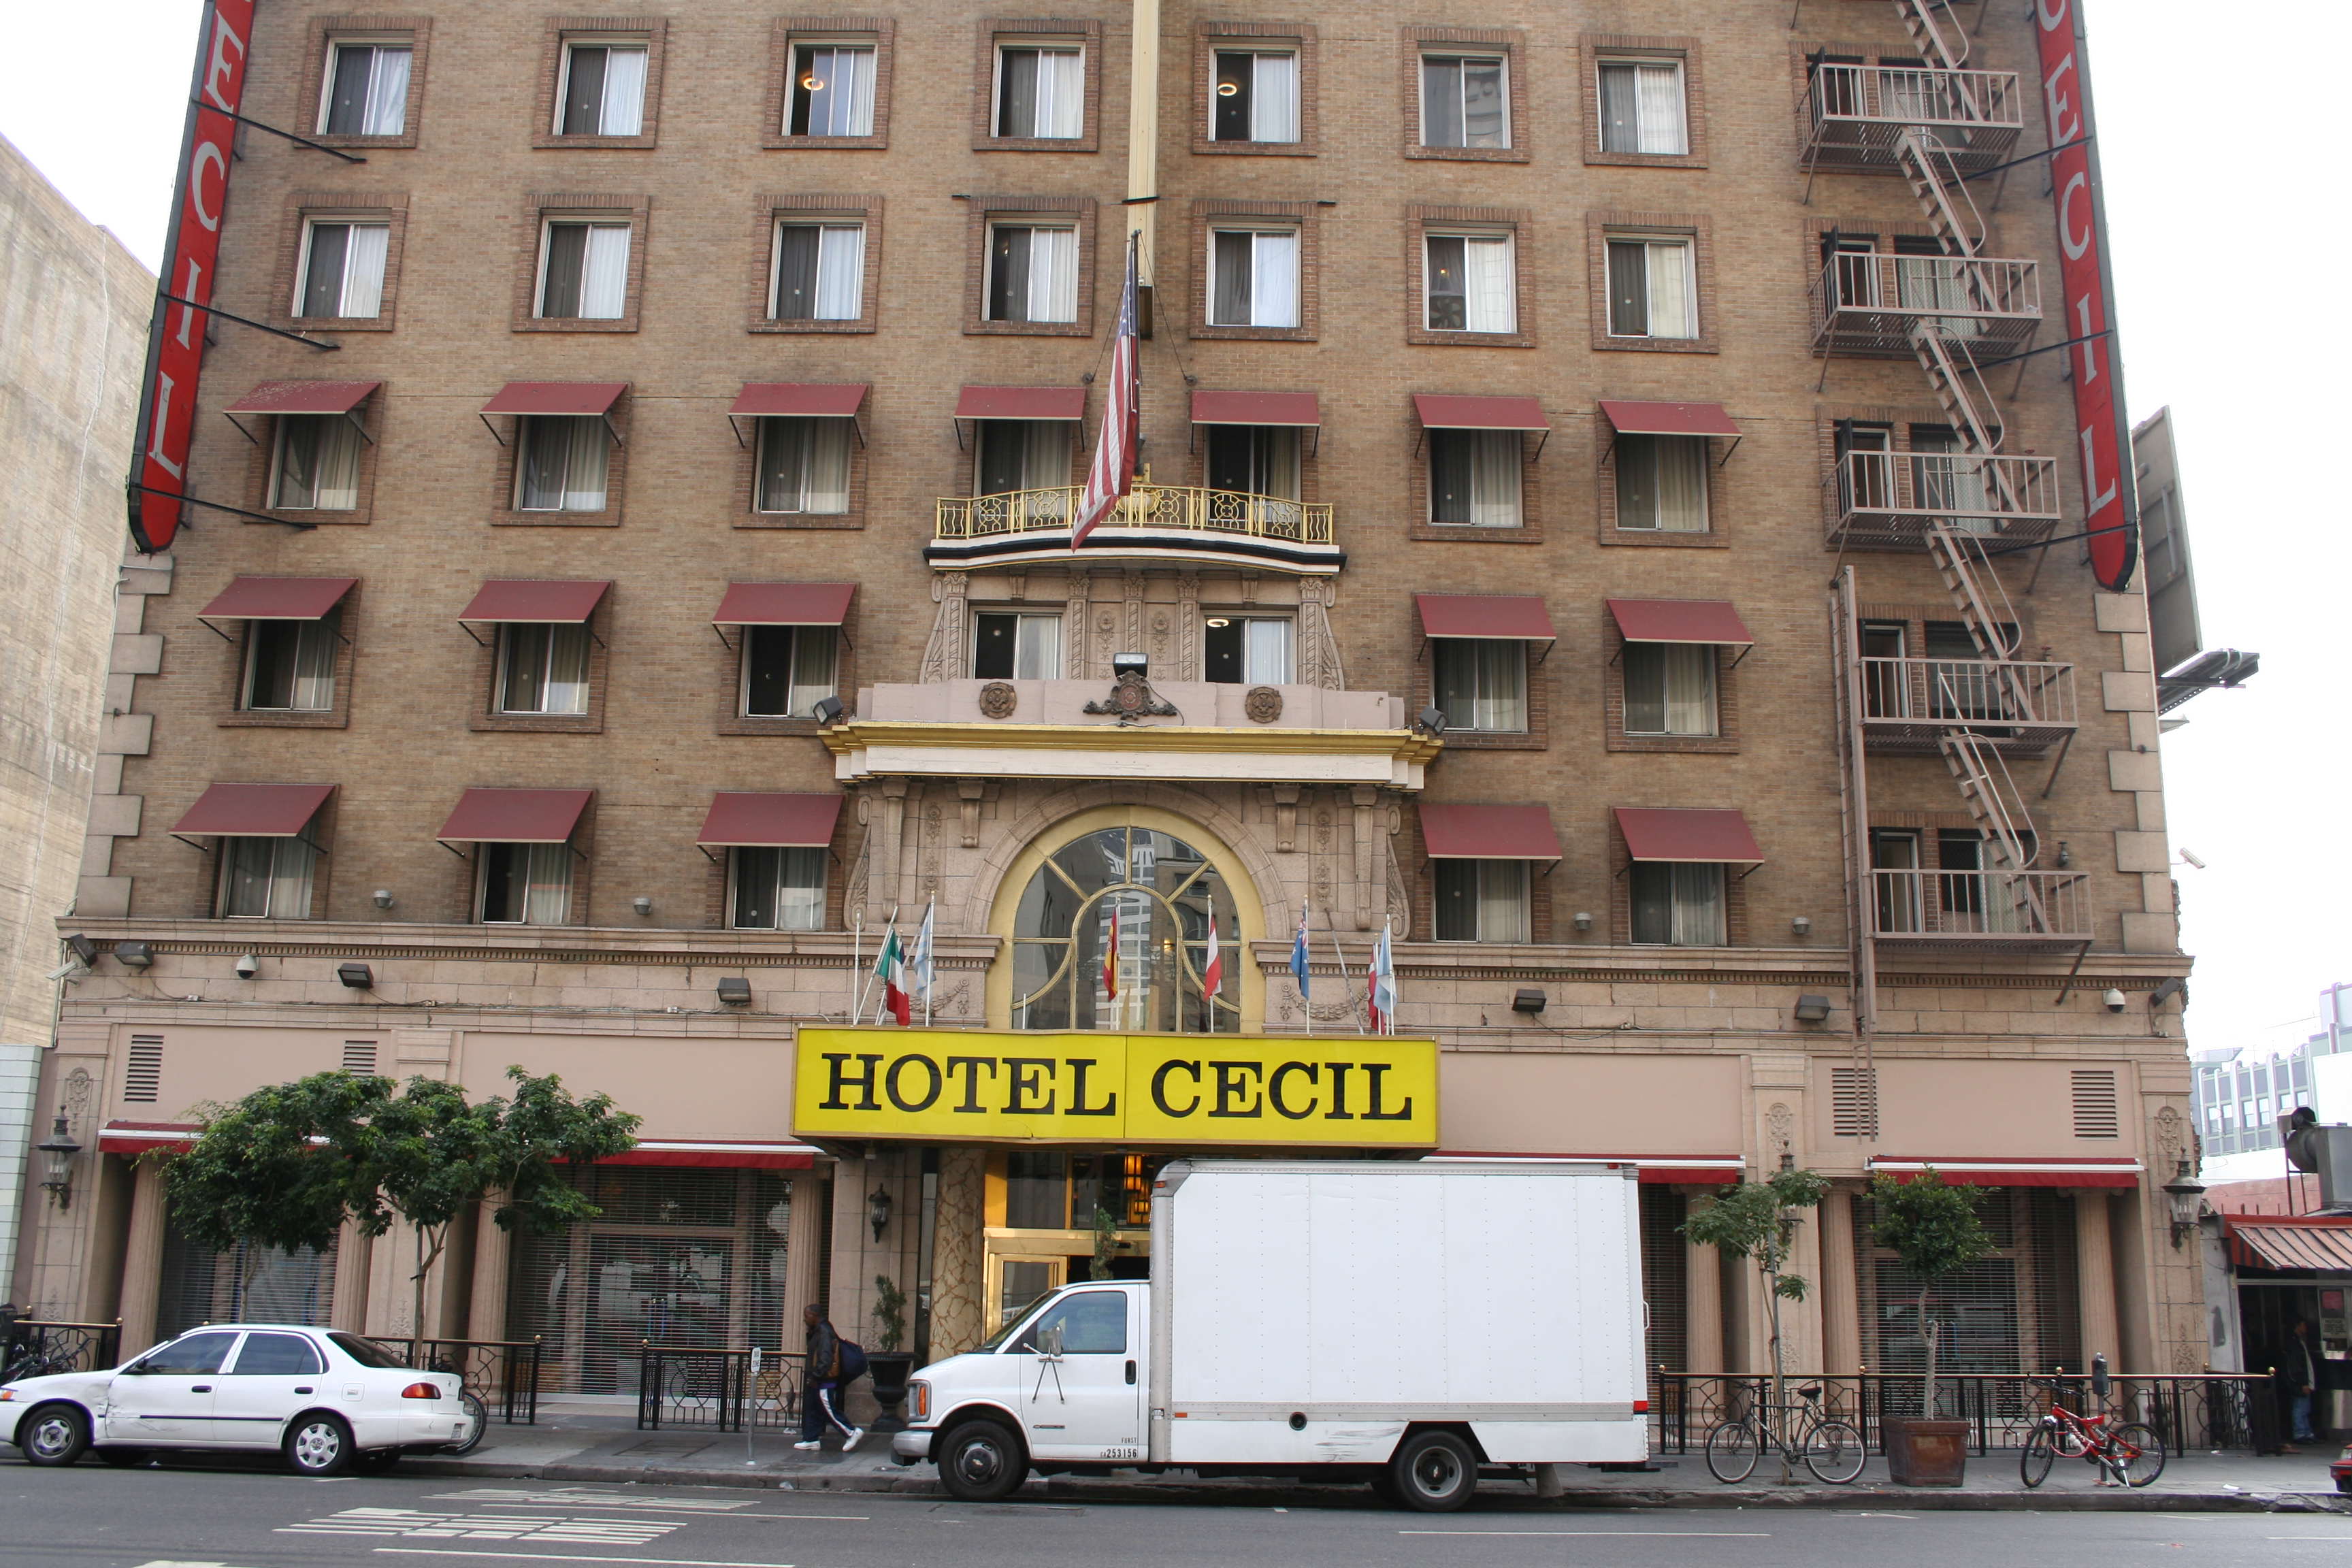 這間旅館是全世界最會「殺人」的索命旅館！沒想到藍可兒命案在這旅館算是最不知名的呢！